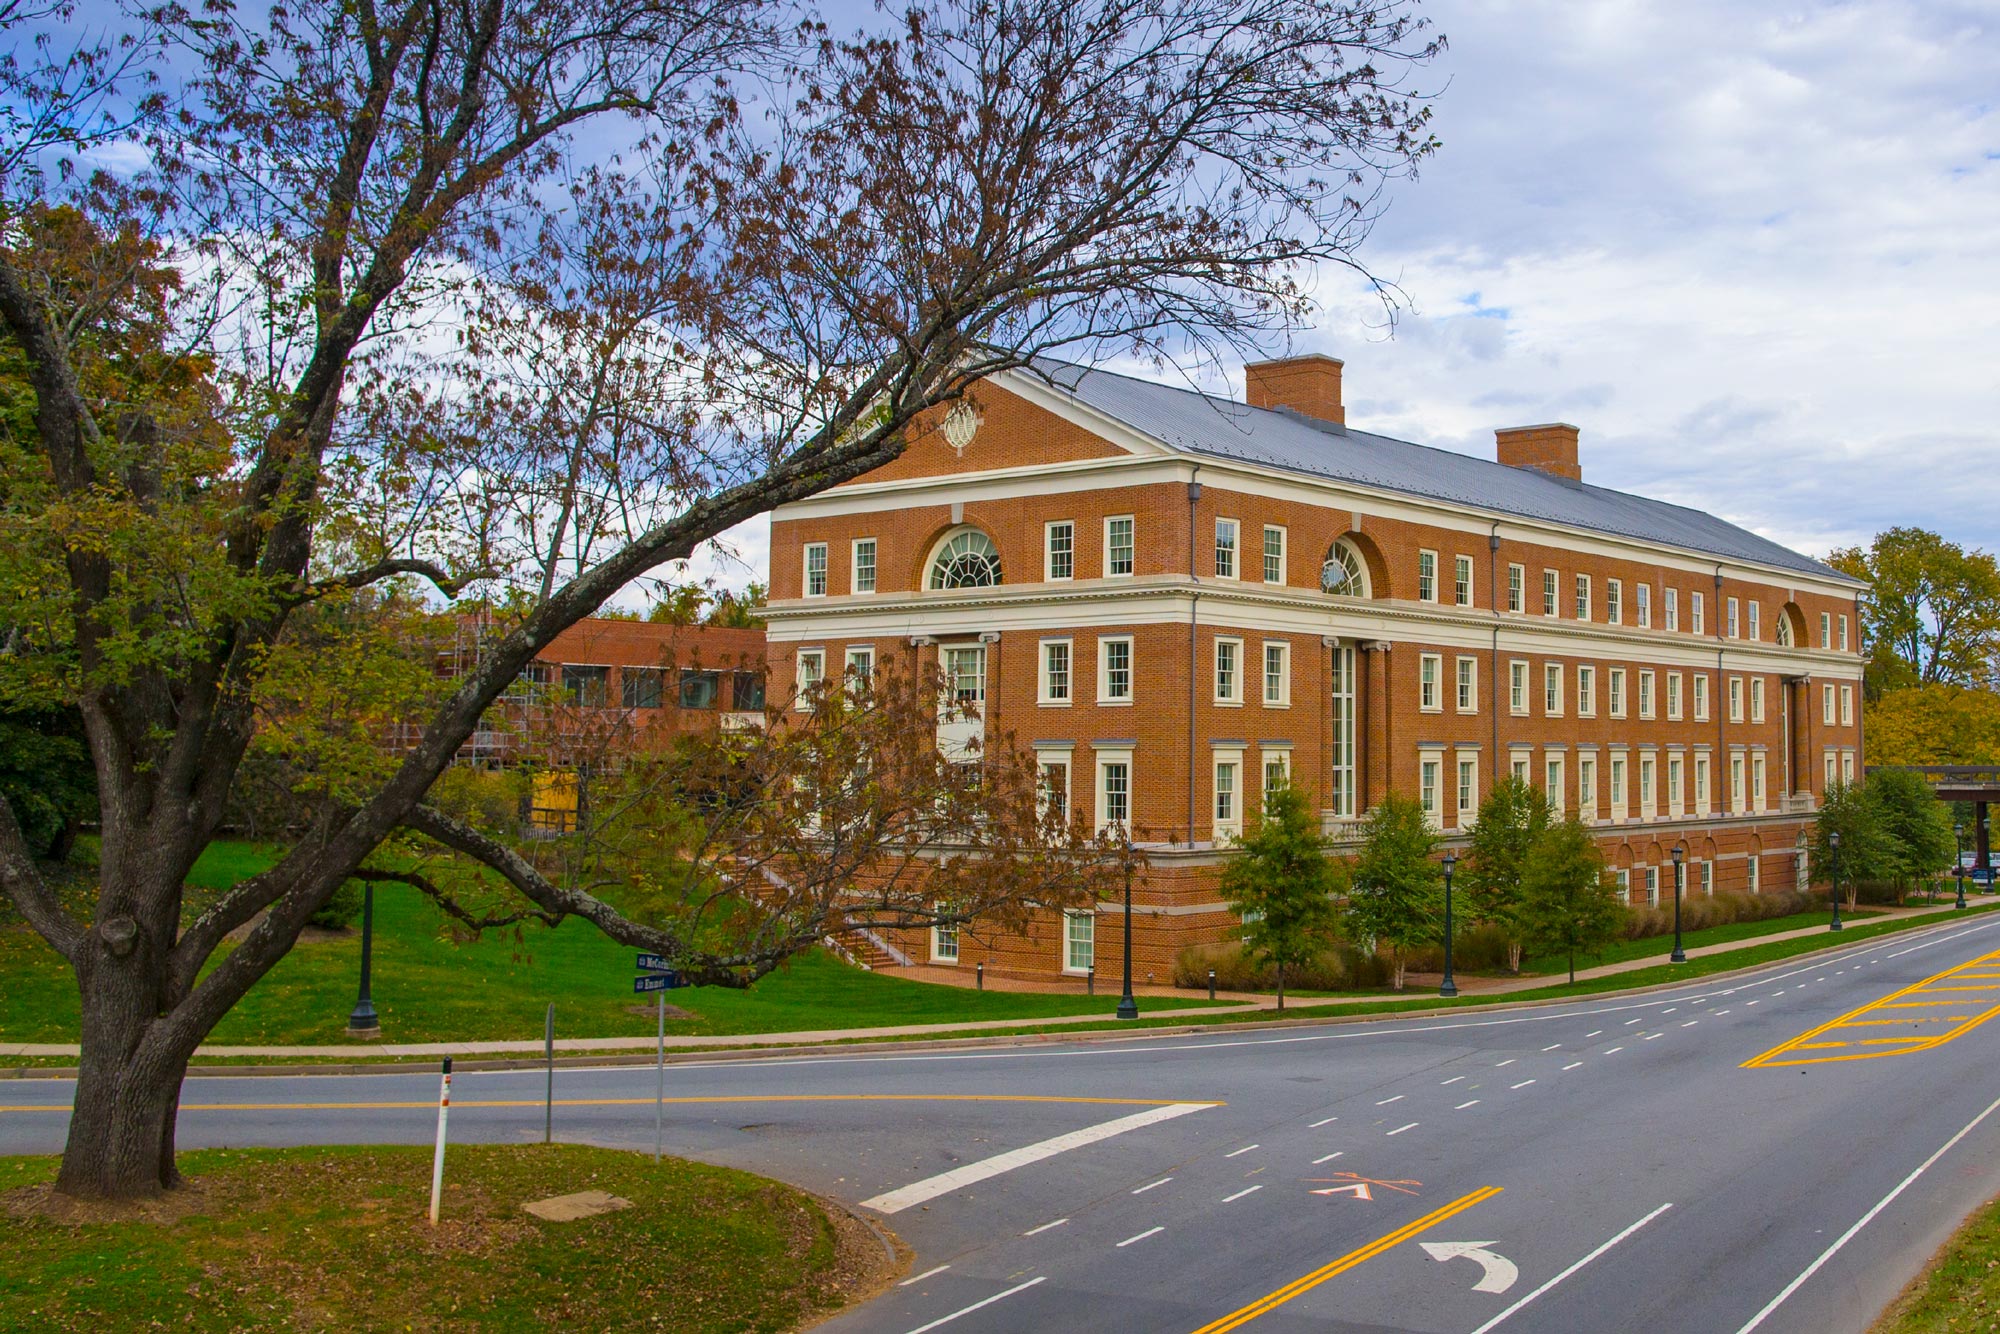 Bavarro Hall in Charlottesville Virginia